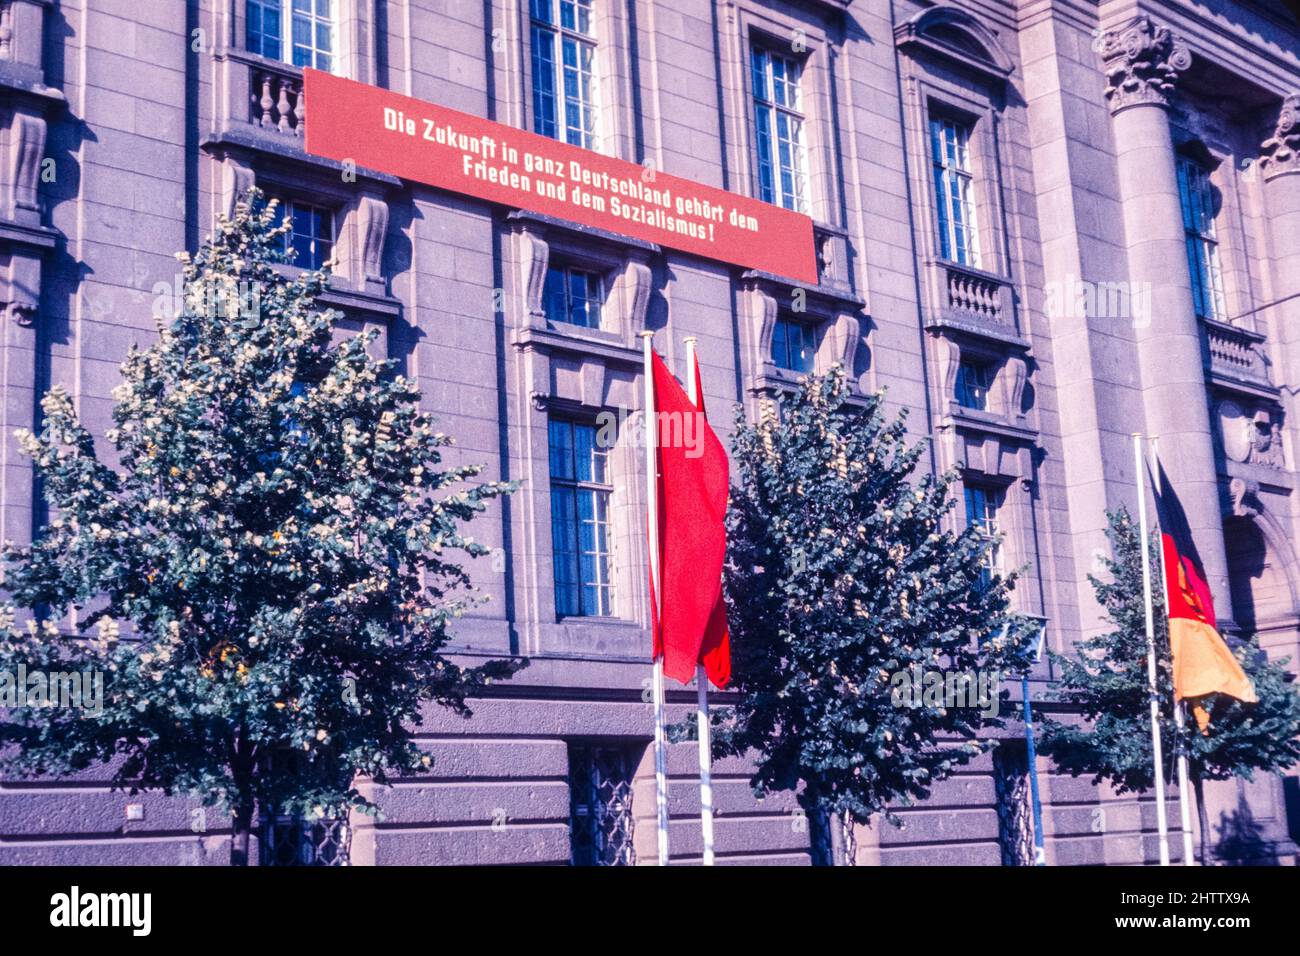 Ost-Berlin, 1962. Der Slogan auf der Wand lautet: "Die Zukunft in ganz Deutschland gehört dem Frieden und dem Sozialismus." Stockfoto